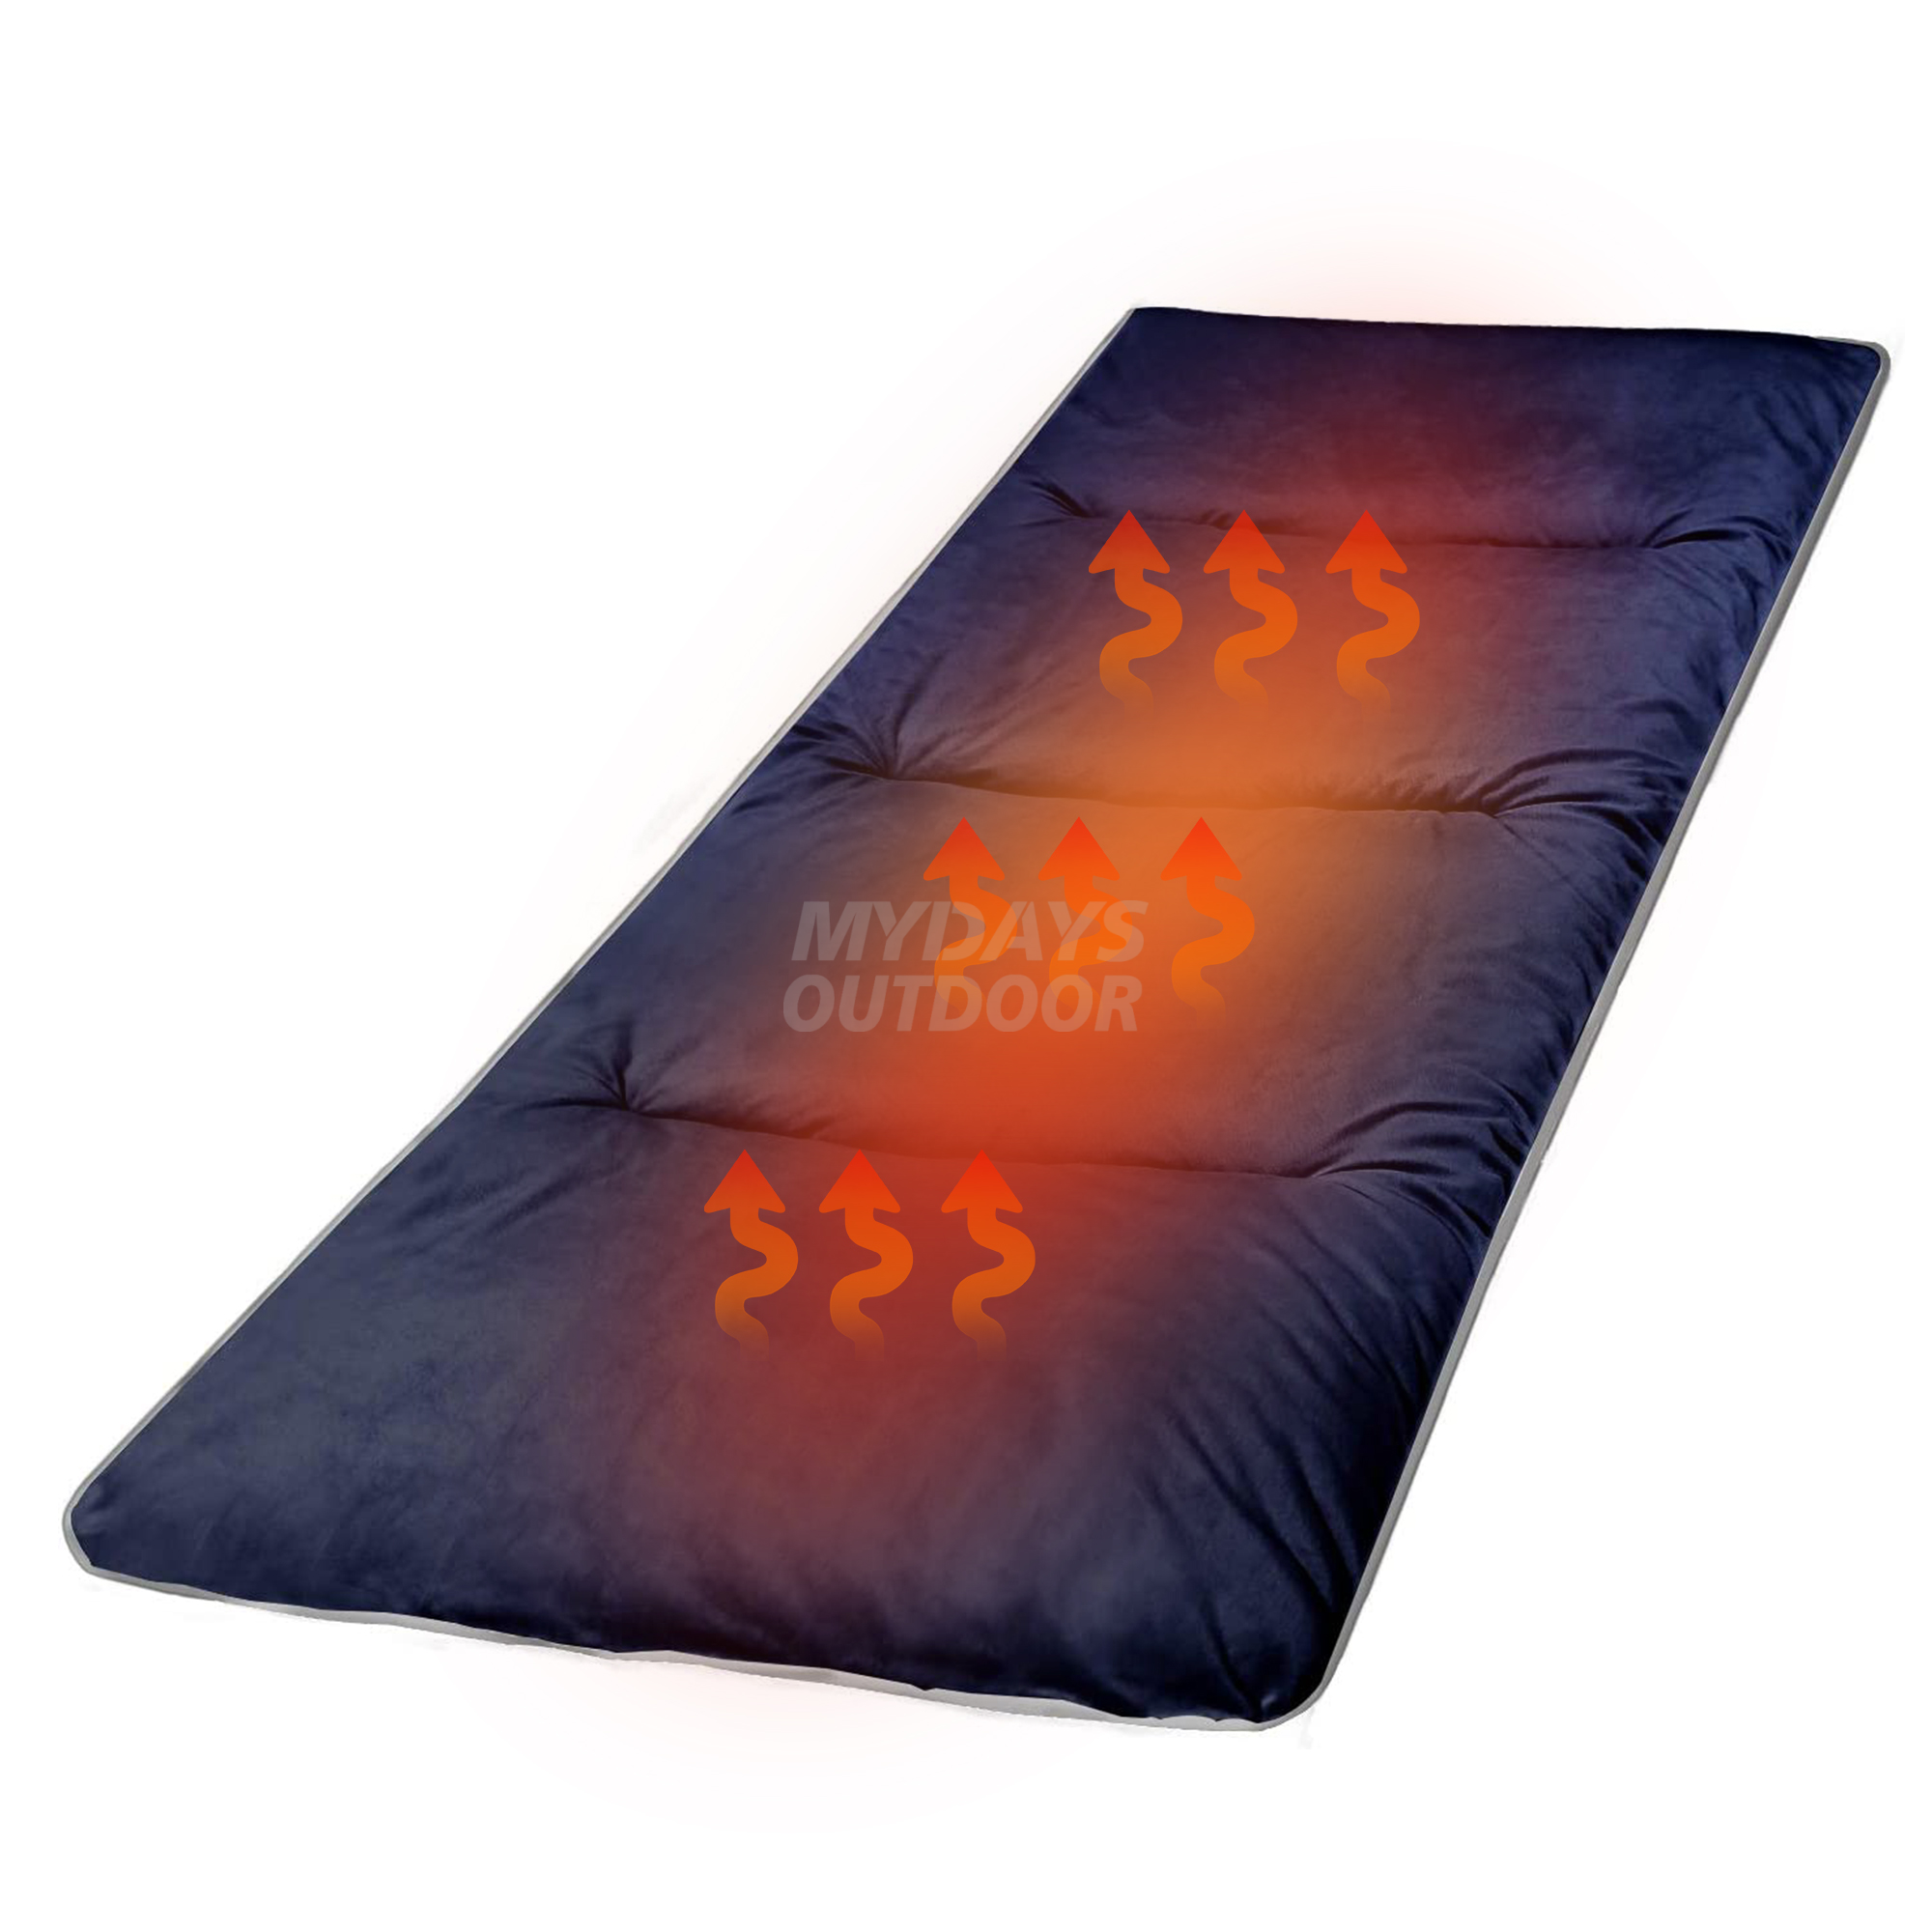 Подушечки для кемпинговых кроваток с подогревом Мягкий удобный хлопковый матрас для спальных кроваток MDSCM-30